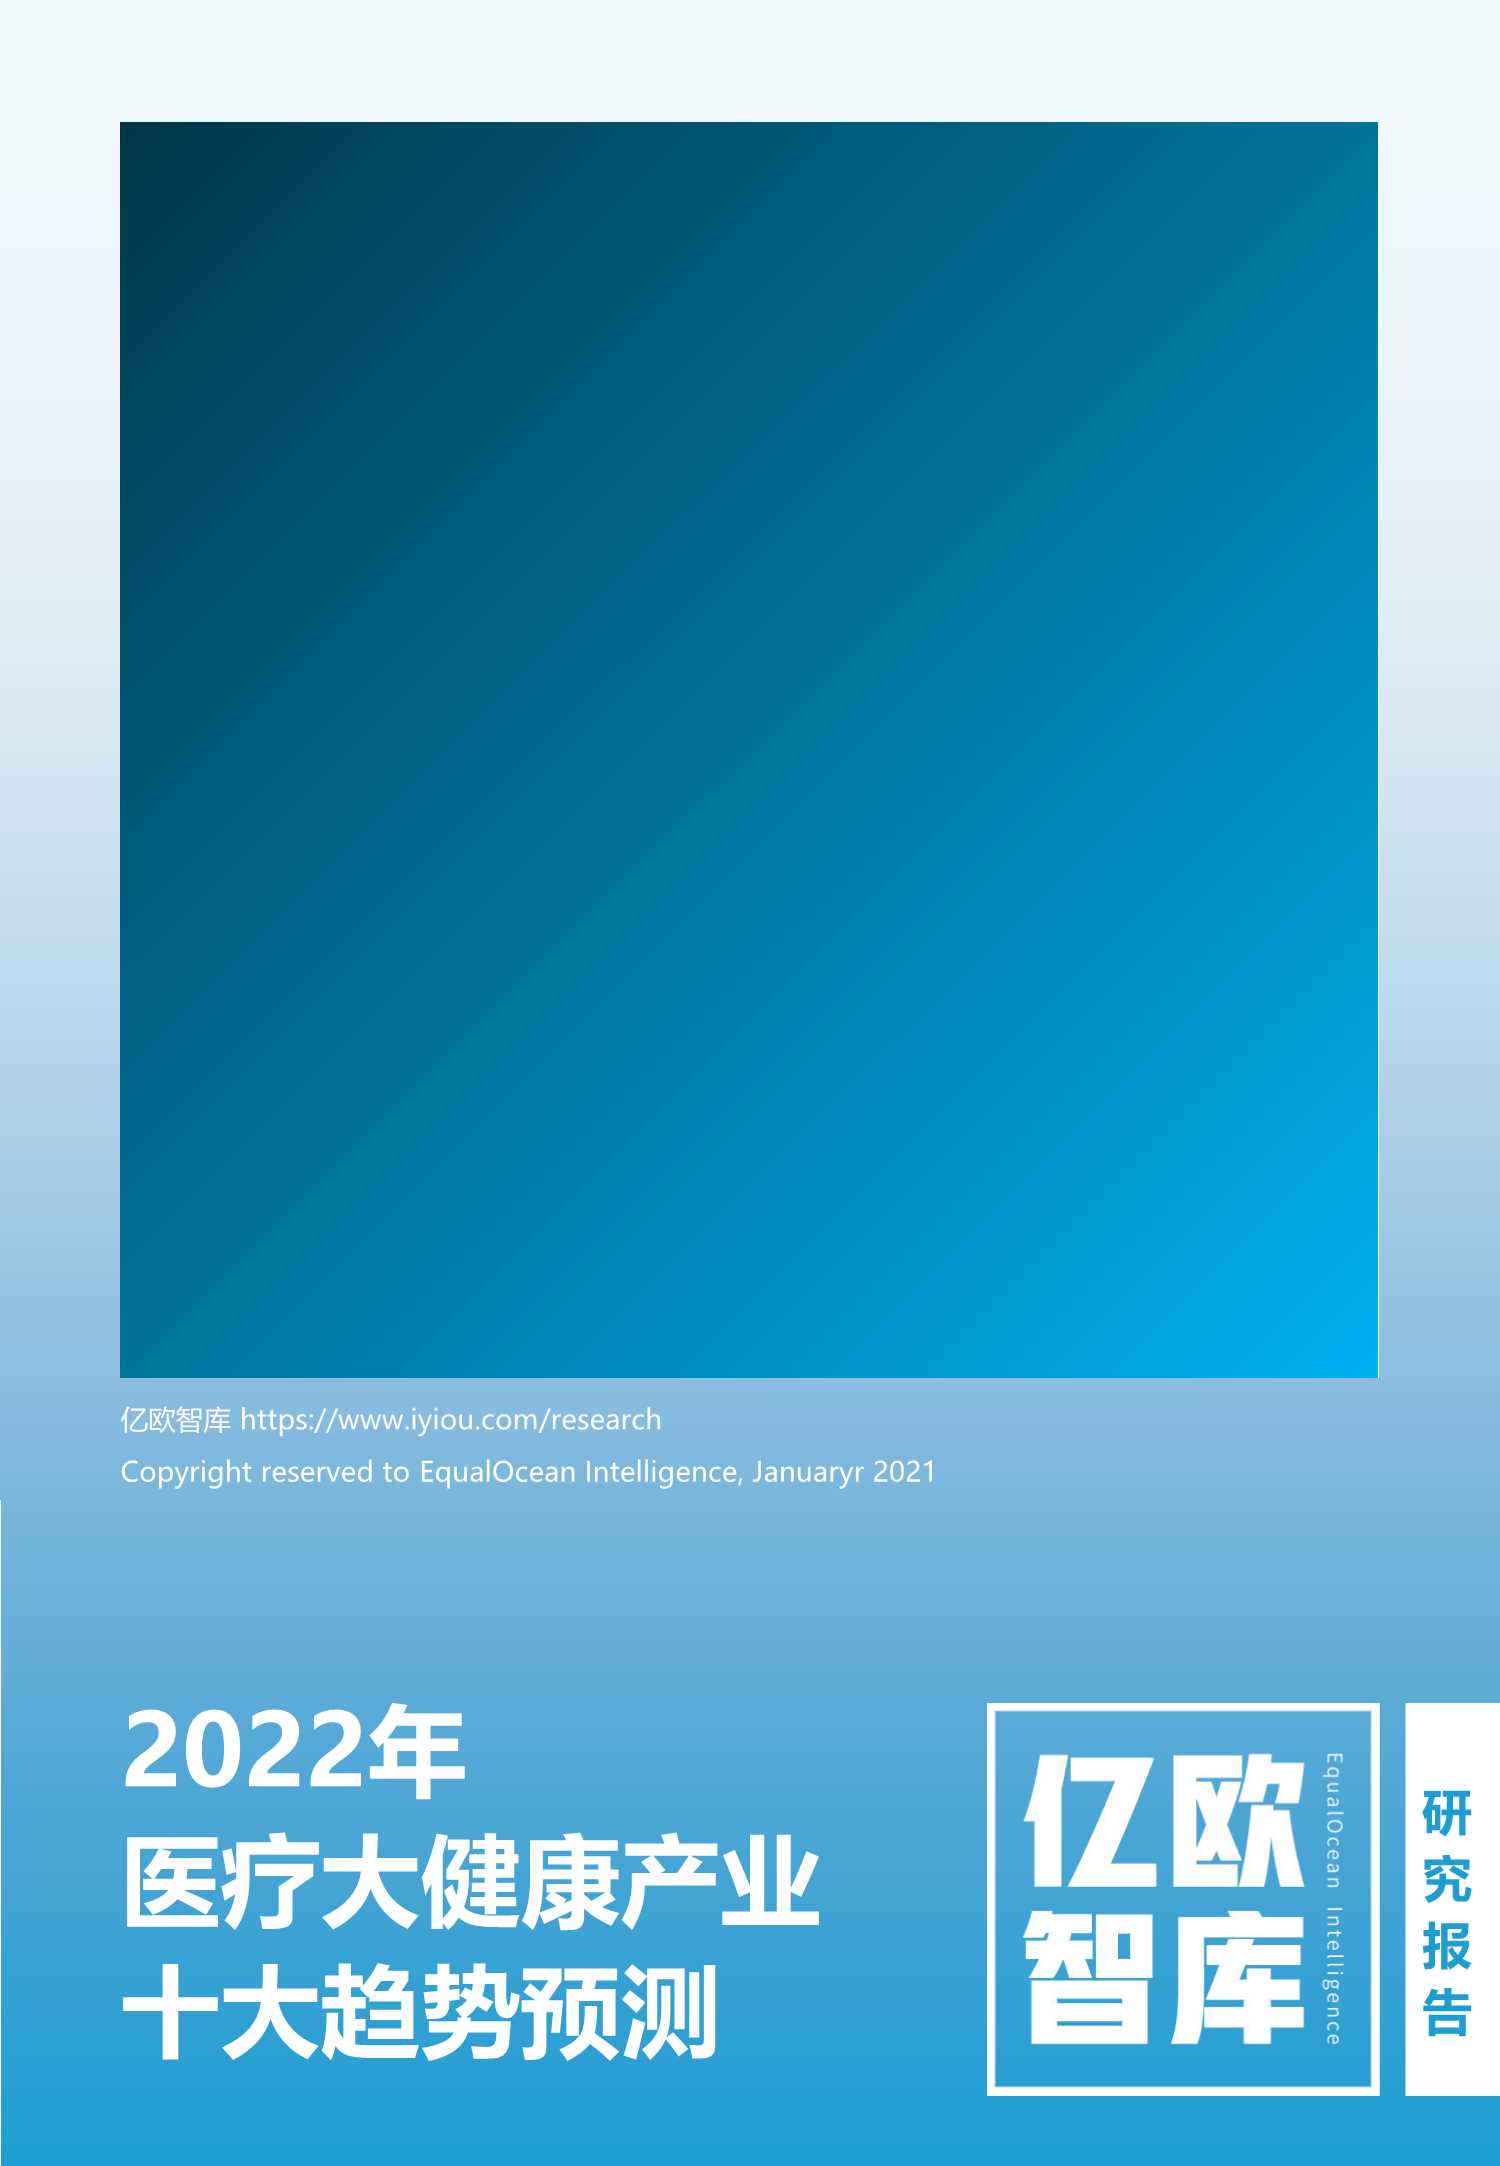 亿欧智库-2022医疗大健康产业十大趋势预测-2022.02-54页